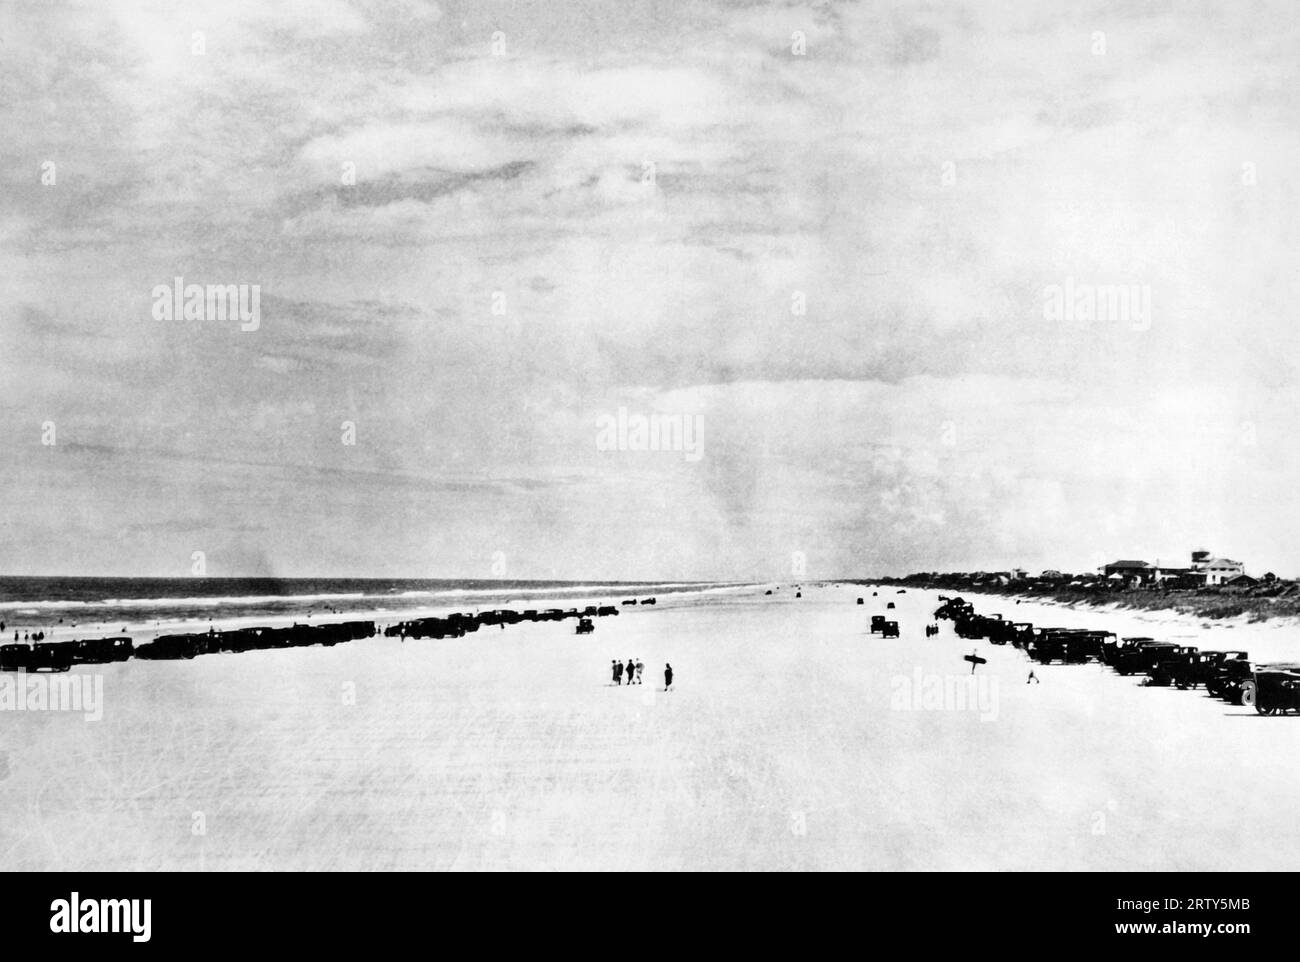 Ormond Beach, Daytona Beach, Floride : c. 1929 courses de vitesse auront lieu ici en février sur Daytona Beach entre Frank Lockhart de Californie, JM White de Philadelphie, et Malcolm Campbell de Londres dans un effort pour battre le record du Major Seagrave de 203 km/h établi ici en mars dernier. Banque D'Images